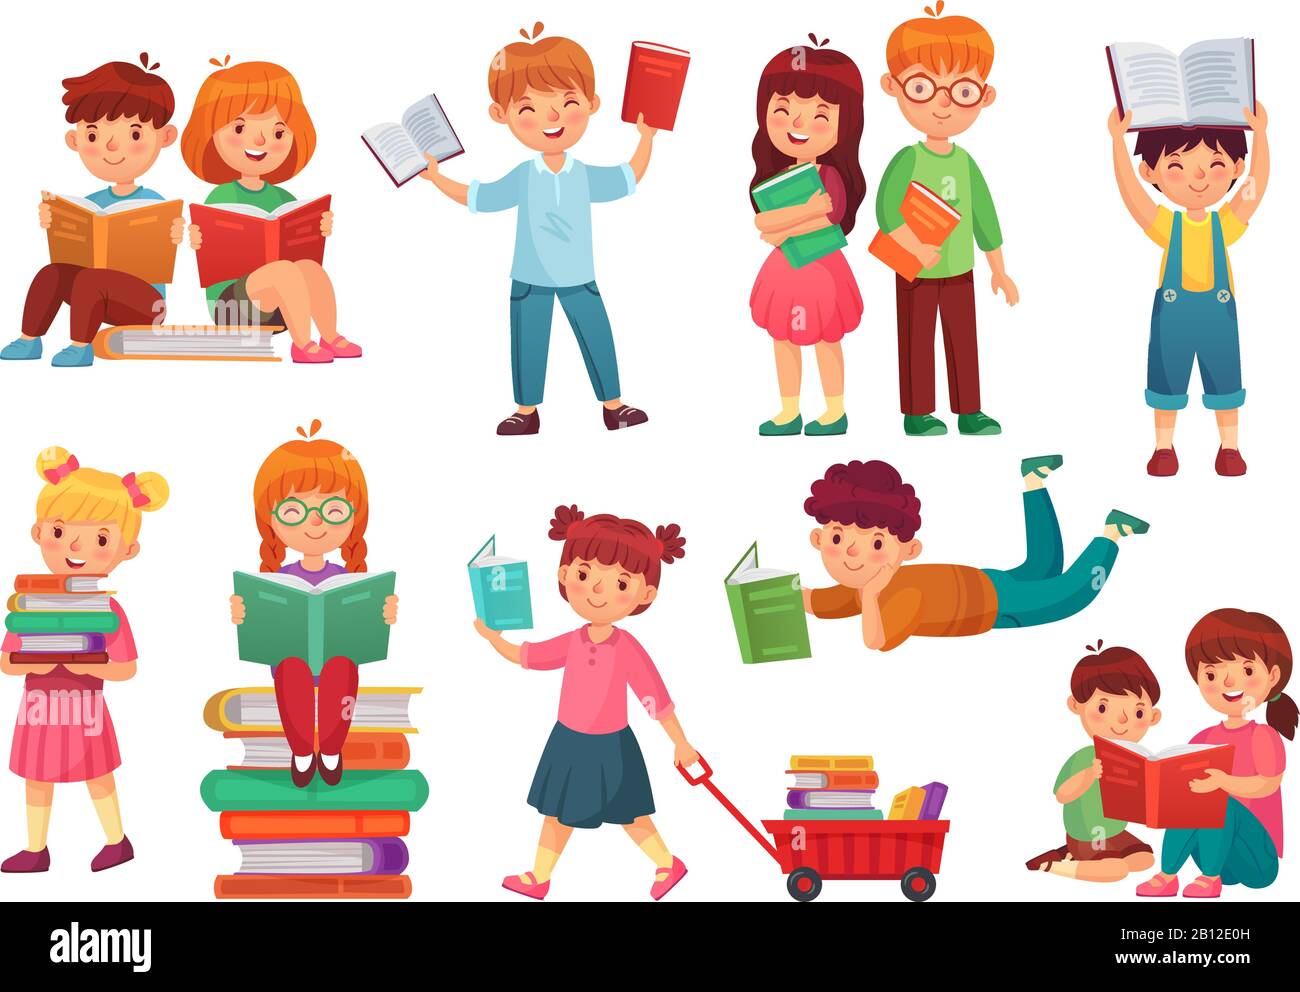 Kinder lesen Buch. Fröhliche Kinder lesen Bücher, Mädchen und Jungen lernen zusammen und junge Studenten isolierten Cartoon-Vektor-Illustration Stock Vektor